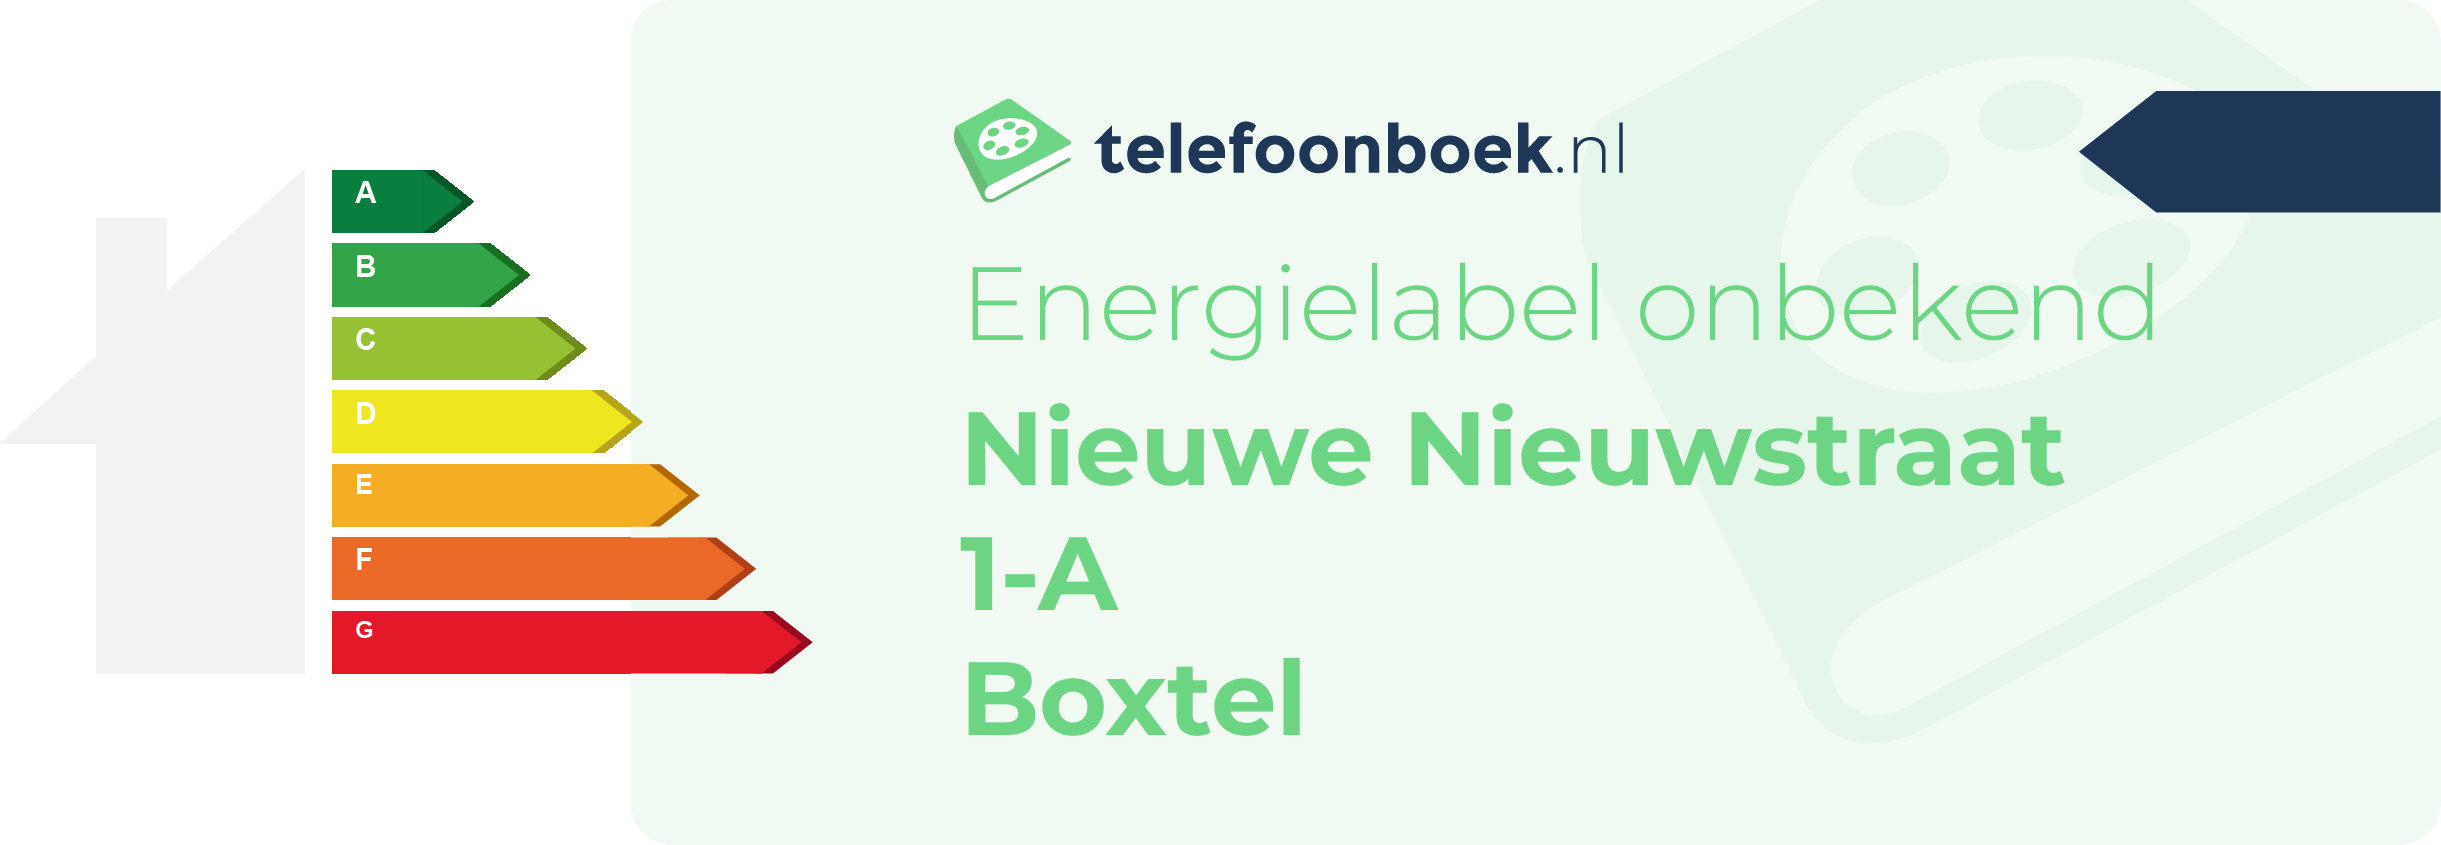 Energielabel Nieuwe Nieuwstraat 1-A Boxtel